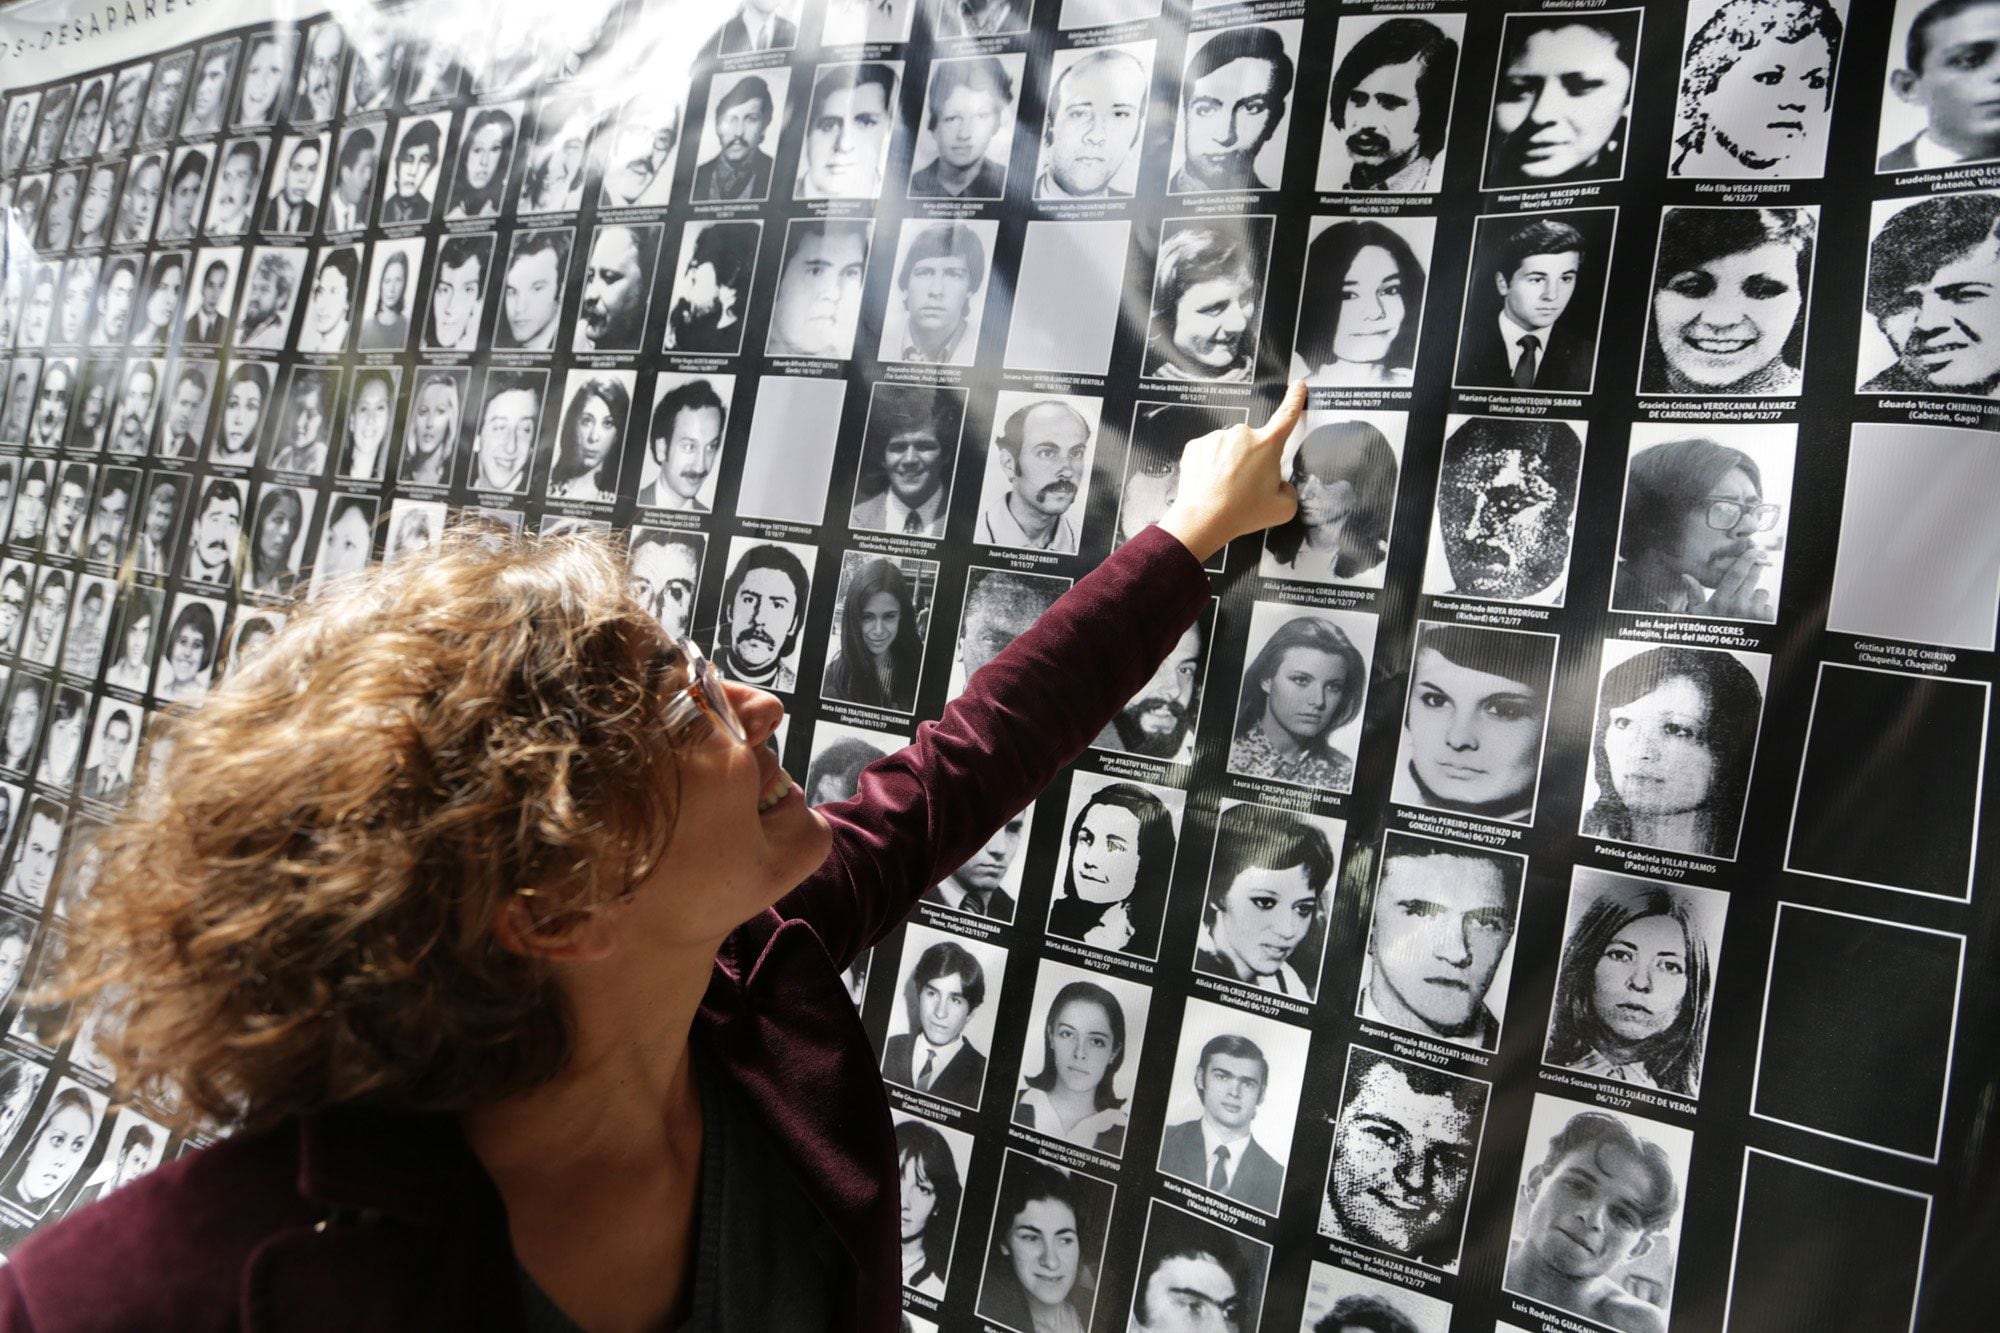 Giglio señala con una sonrisa el retrato de su madre dentro de un cartel en el lugar donde estaba ubicado el centro de tortura El Atlético. (Gentileza Valeria Perasso, BBC Mundo)